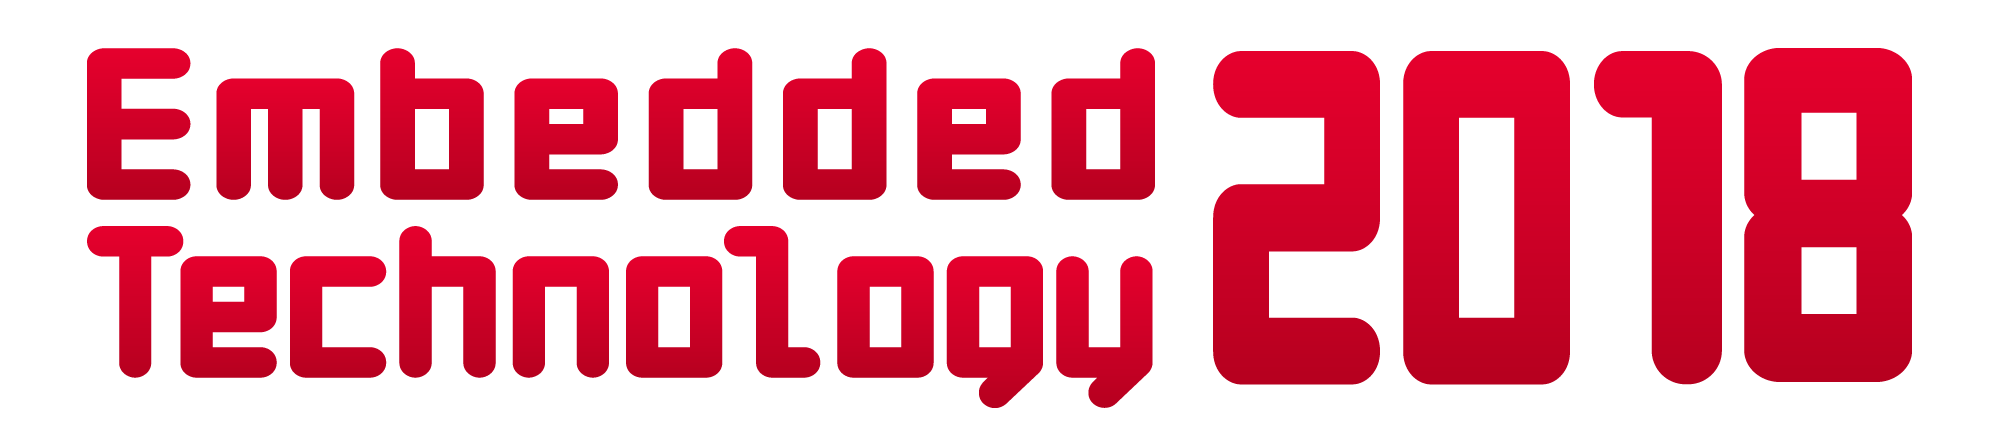 logo_ET2018_red.png